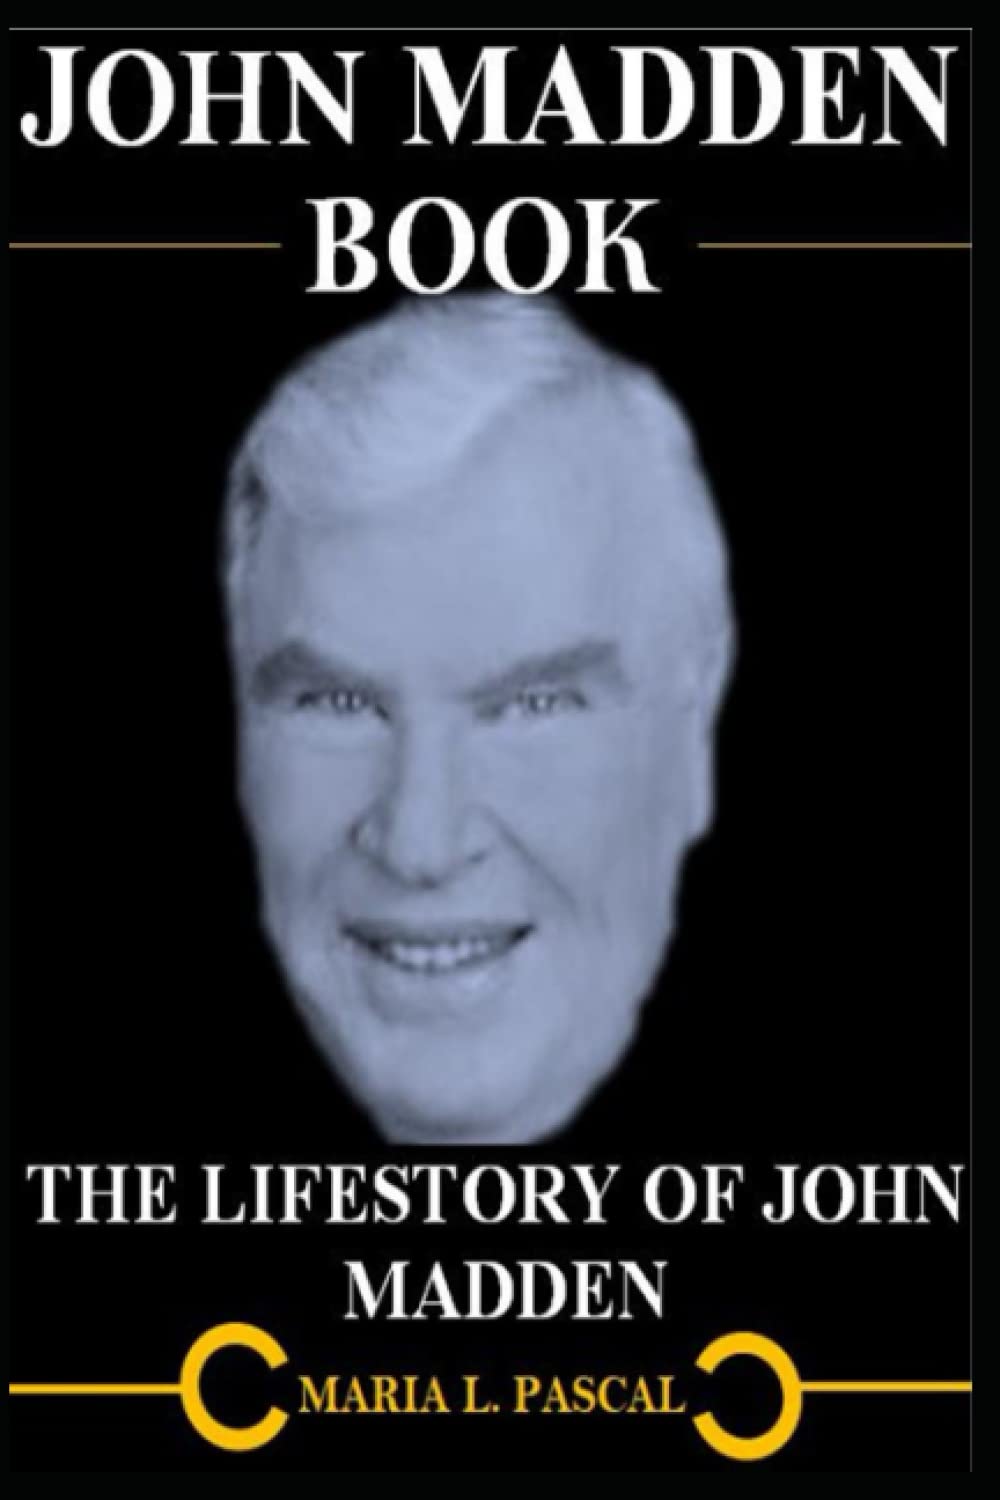 JOHN MADDEN BOOK: THE LIFESTORY OF JOHN MADDEN